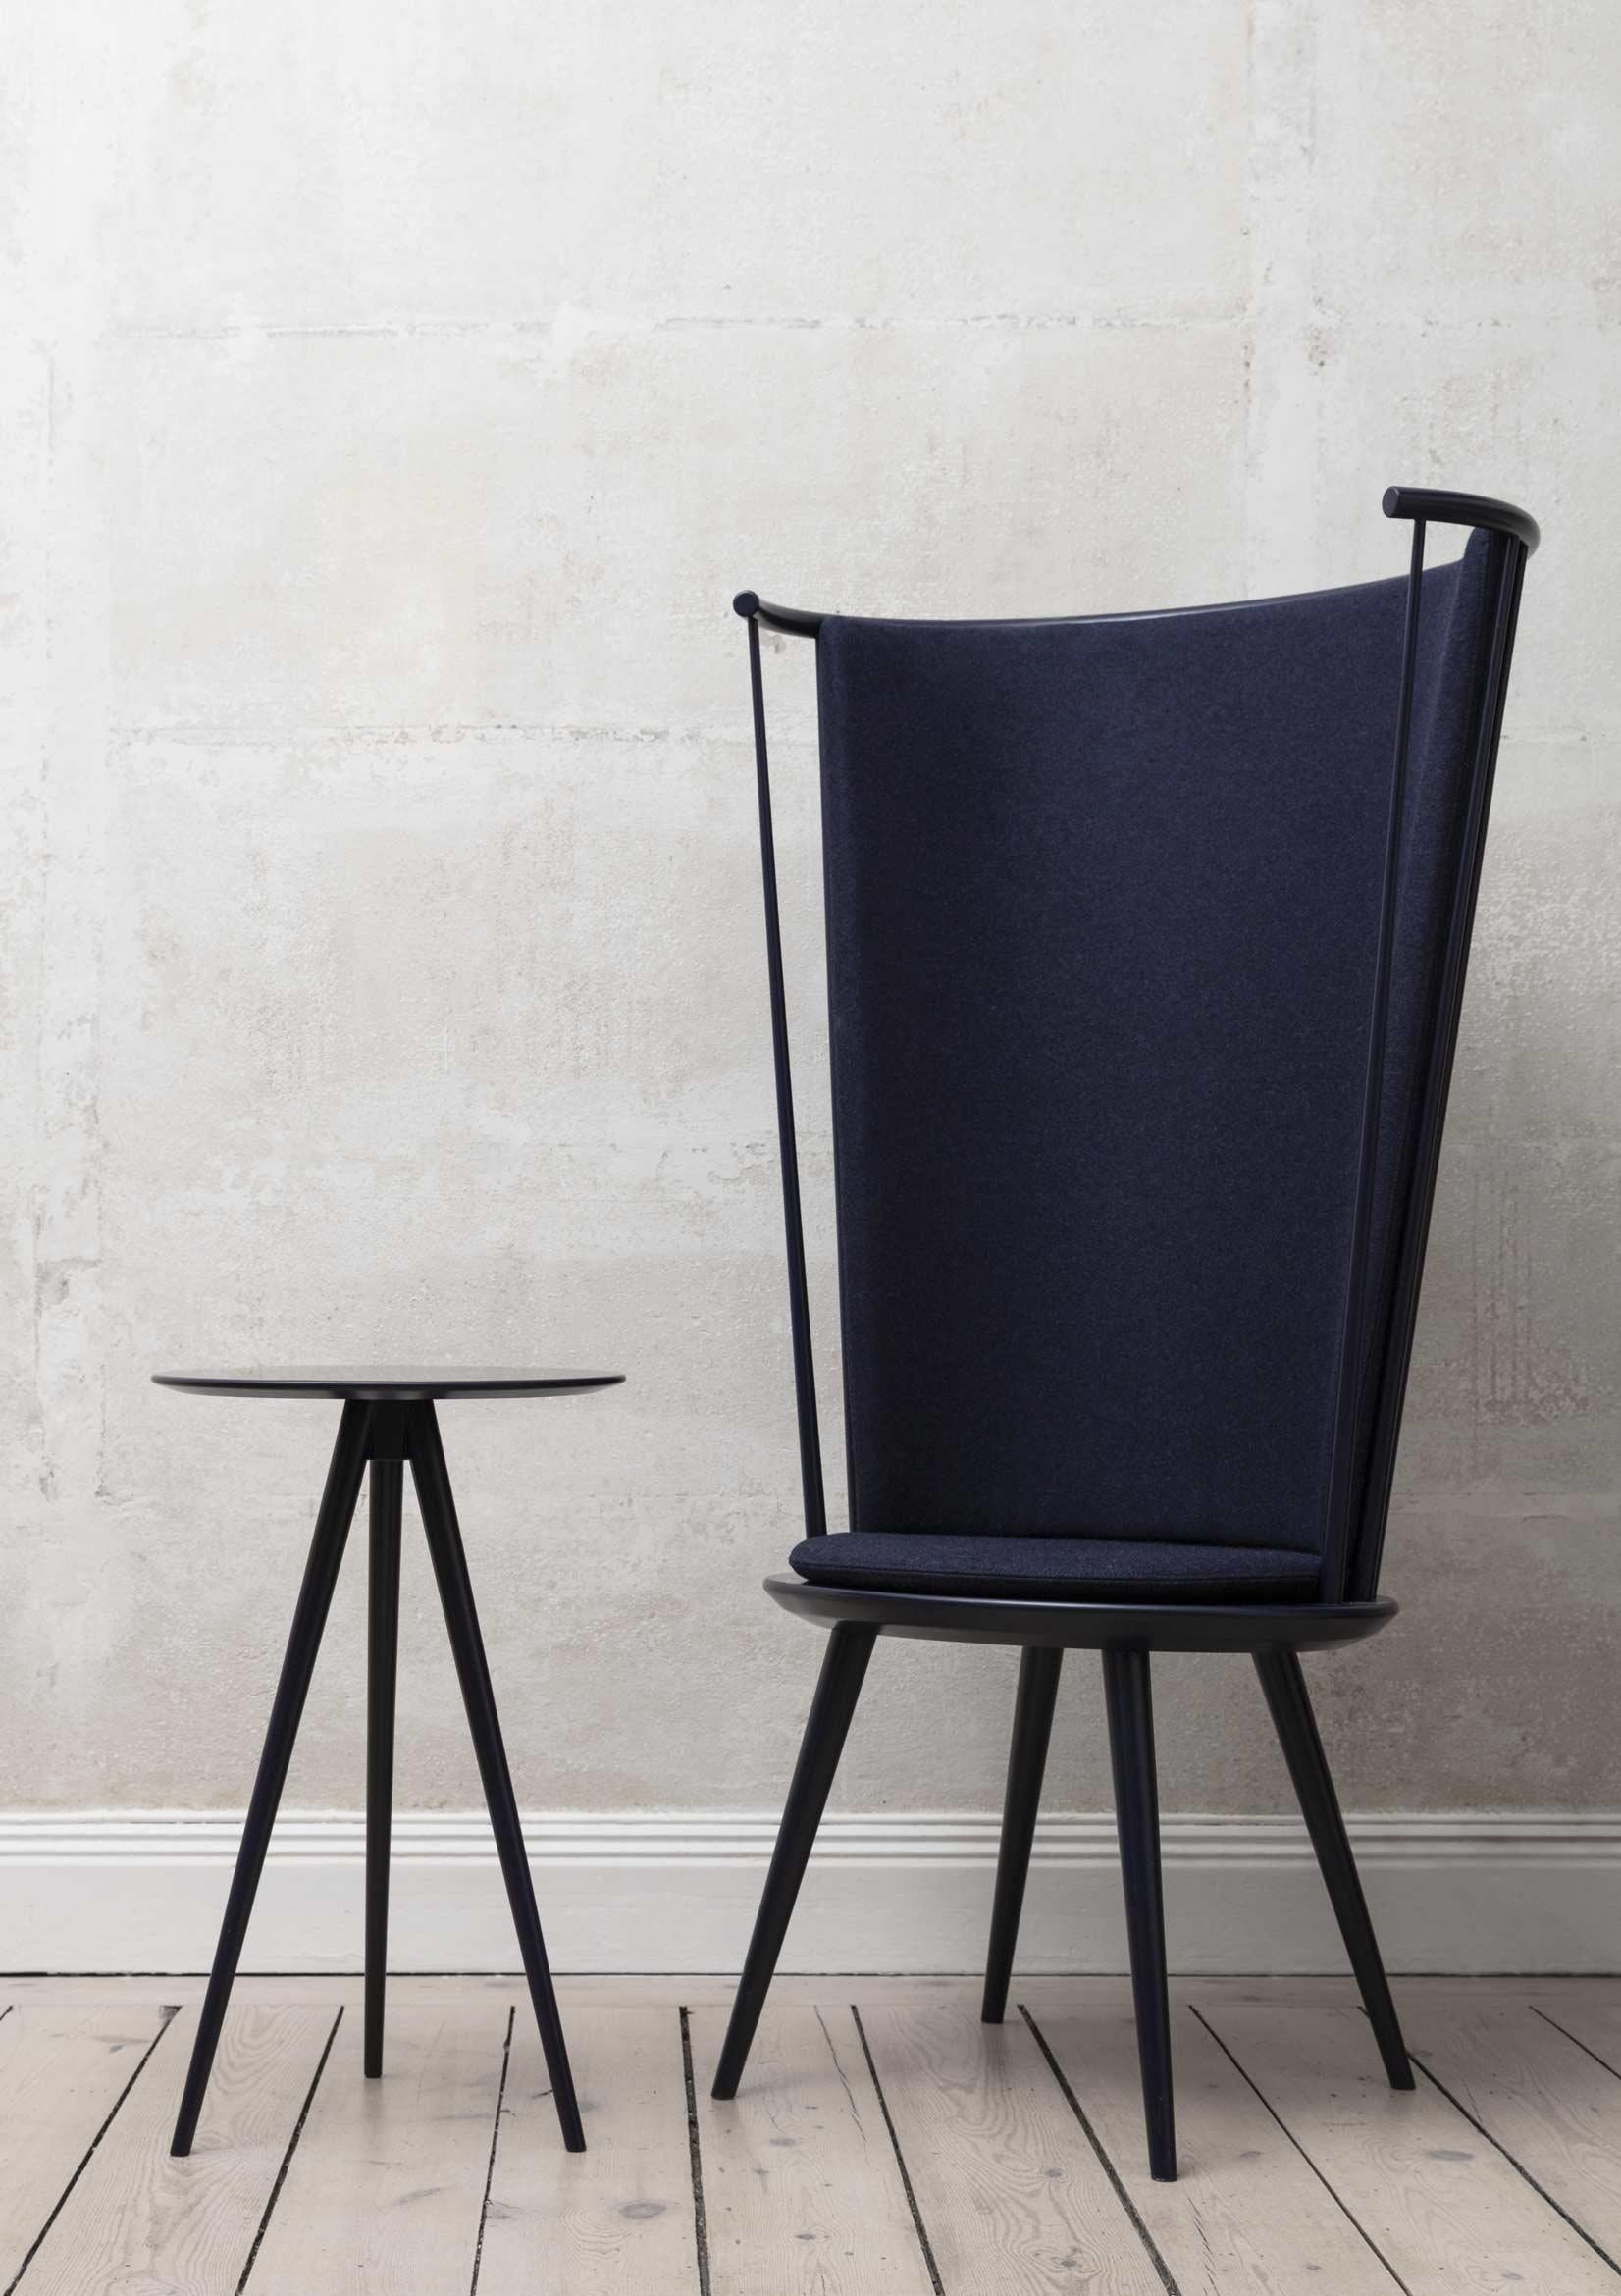 Other White Storängen Birch Chair by Storängen Design For Sale